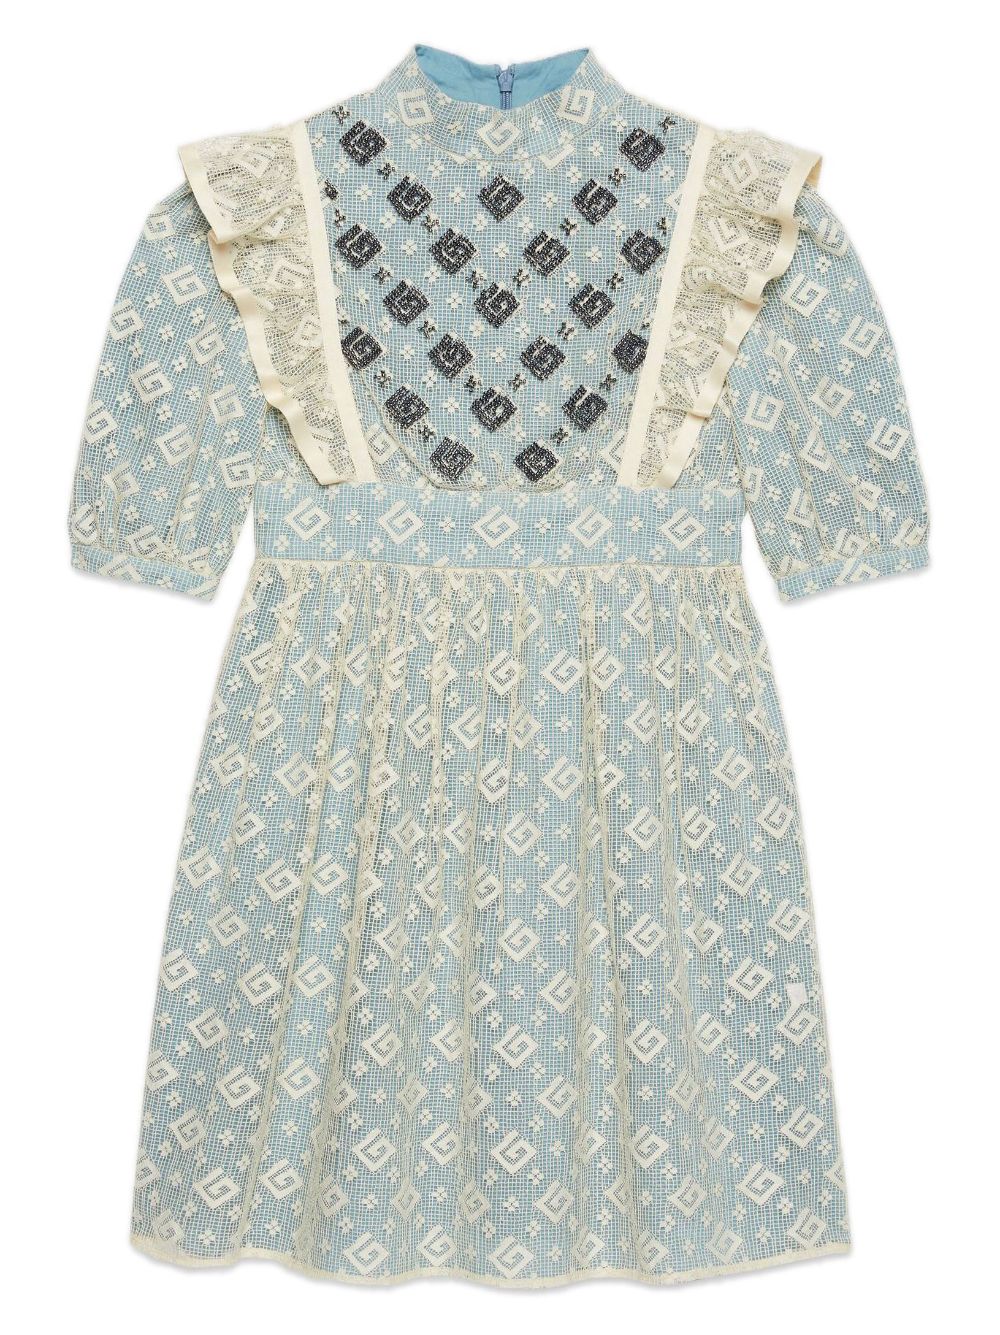 Robe bleu clair et ivoire pour petite fille, avec application sur toute la robe, jupe évasée